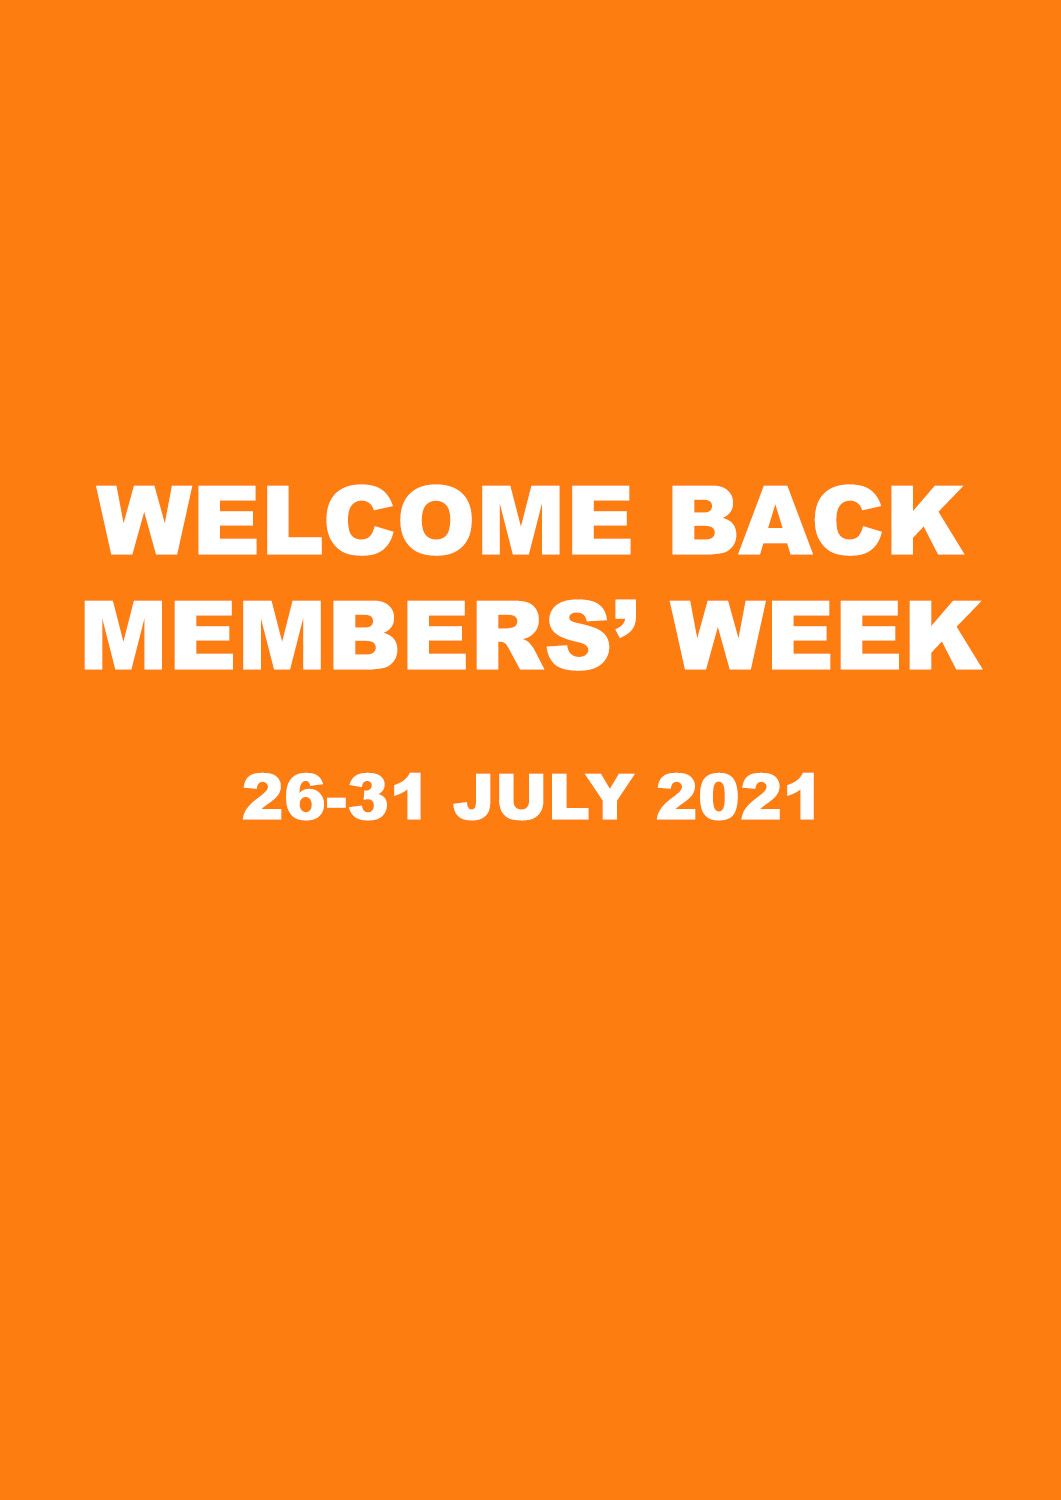 Welcome Back Members’ Week flyer image